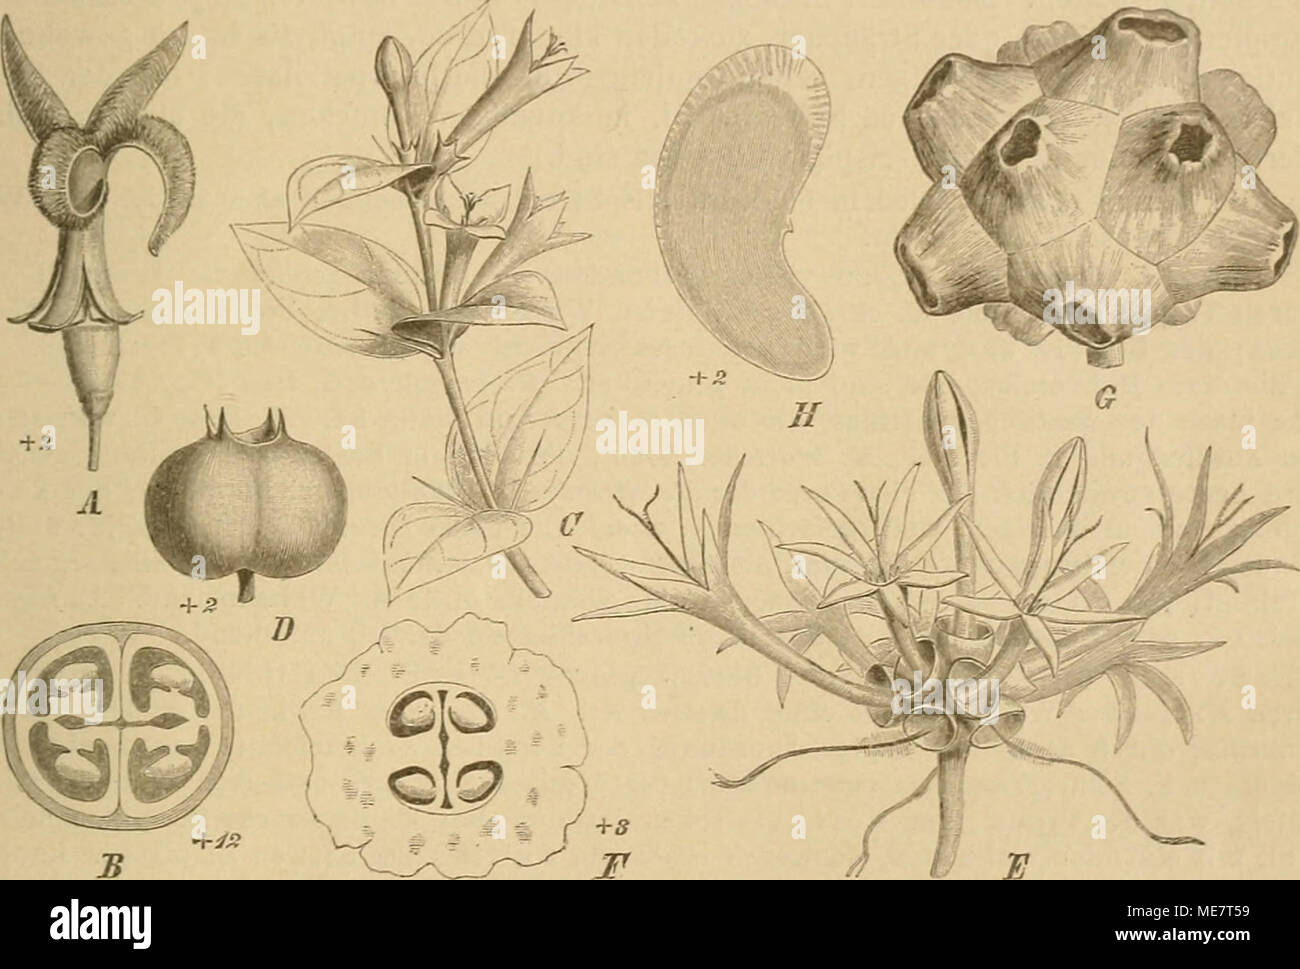 . Die Natürlichen Pflanzenfamilien : nebst ihren Gattungen und wichtigeren Arten, insbesondere den Nutzpflanzen . Fig. 44. A, B Coelospermum'yeticulaium (F. v. Müll.) Benth. A Bl, am Grunde aufspaltend; B Frkn. im Qner- sclinitt. — C D Damnacanthus major Sieb, et Zucc. C Habitus; D Fr. — E—H Morinda longiflora G. Don. E Blütenköpfclien; F Frkn. im Querschnitt; ff Fr.; U S. (Original.) 3 14. Gynochthodes Bl. Bl. gelrenulge-schlechtlich. Kelch Szähnig. Blkr. leder- artig, mit kurzer Röhre und wolligem Schlünde. Stb. der Röhre eingefügt, vorragend. Frkn. ifächerig: Gr. in der (J' Bl. ganz, in de Stock Photo